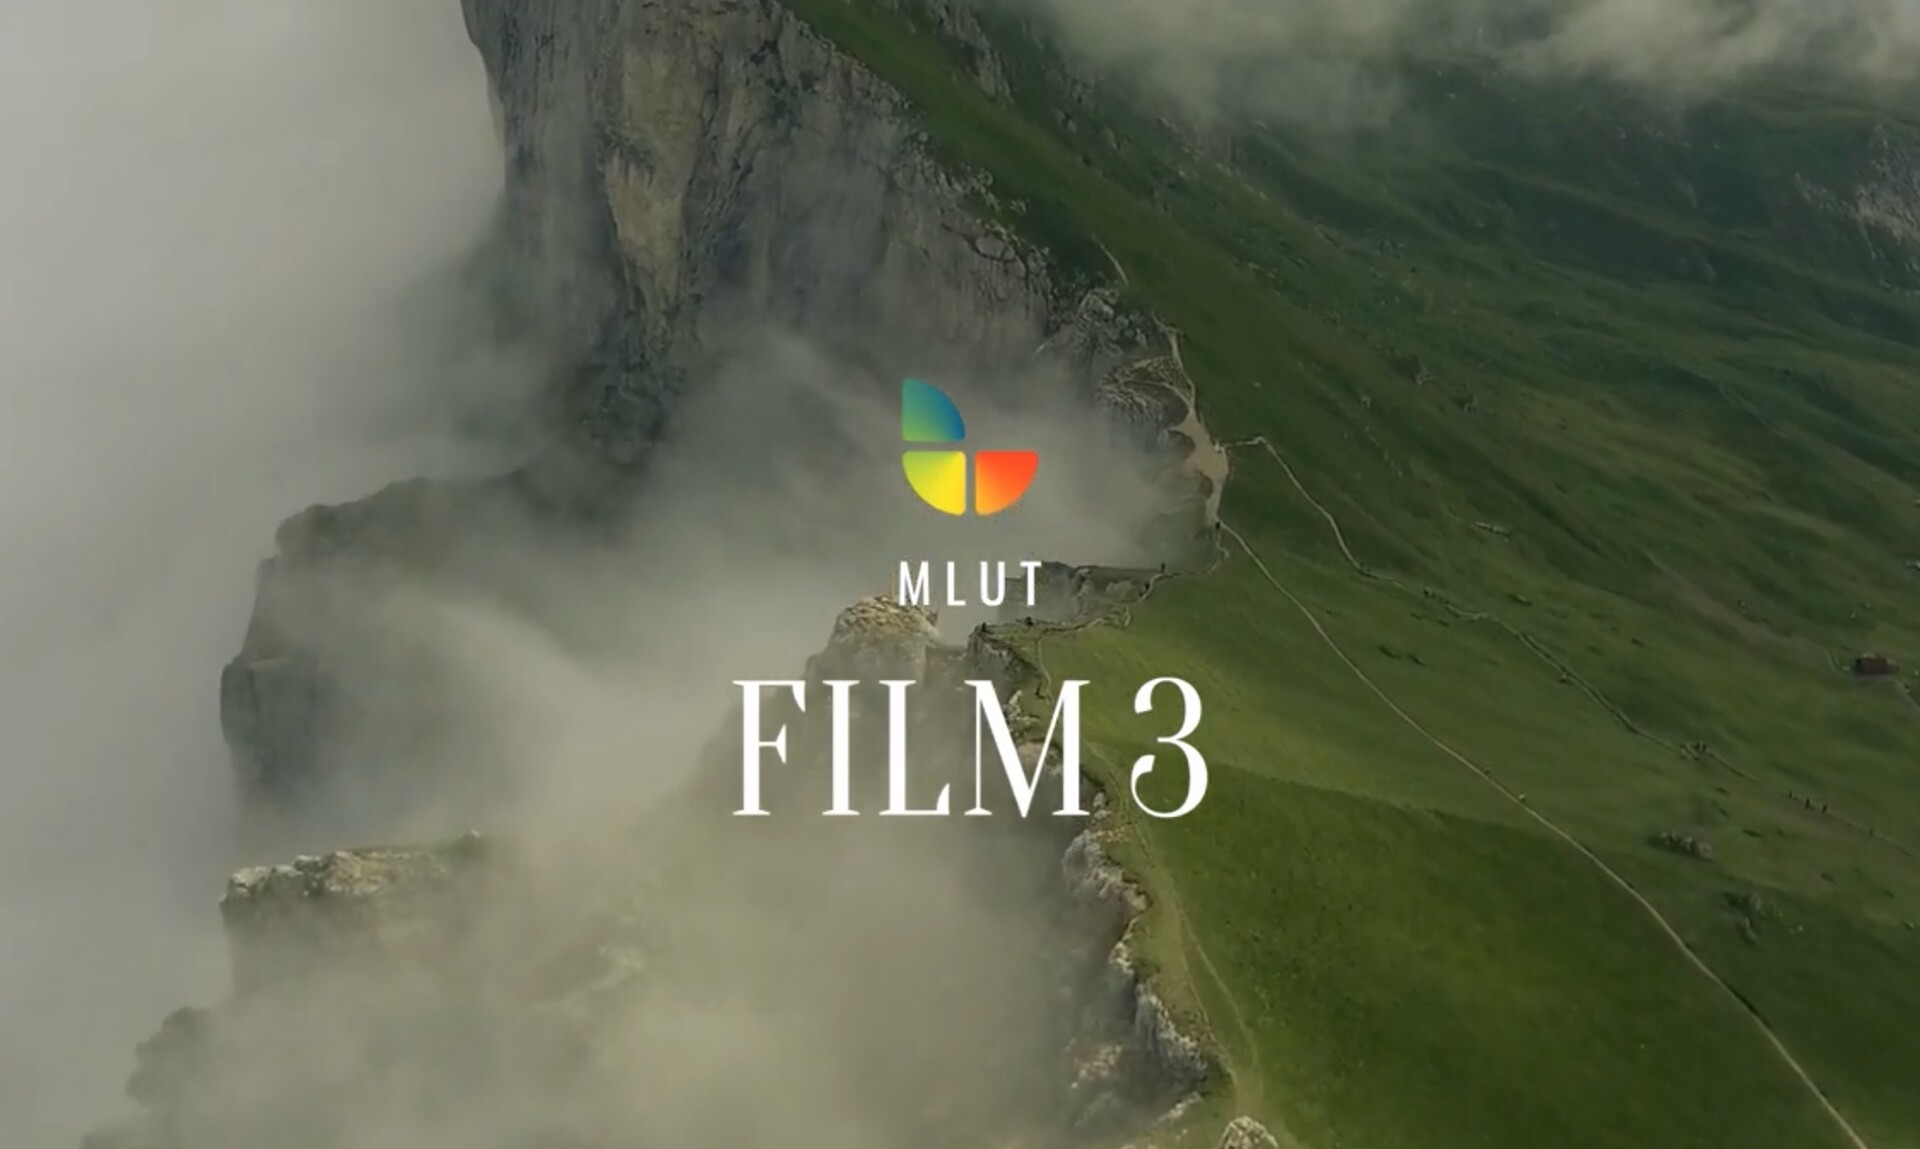  50个专业好莱坞电影分级LUTS调色预设 mLUT Film 3